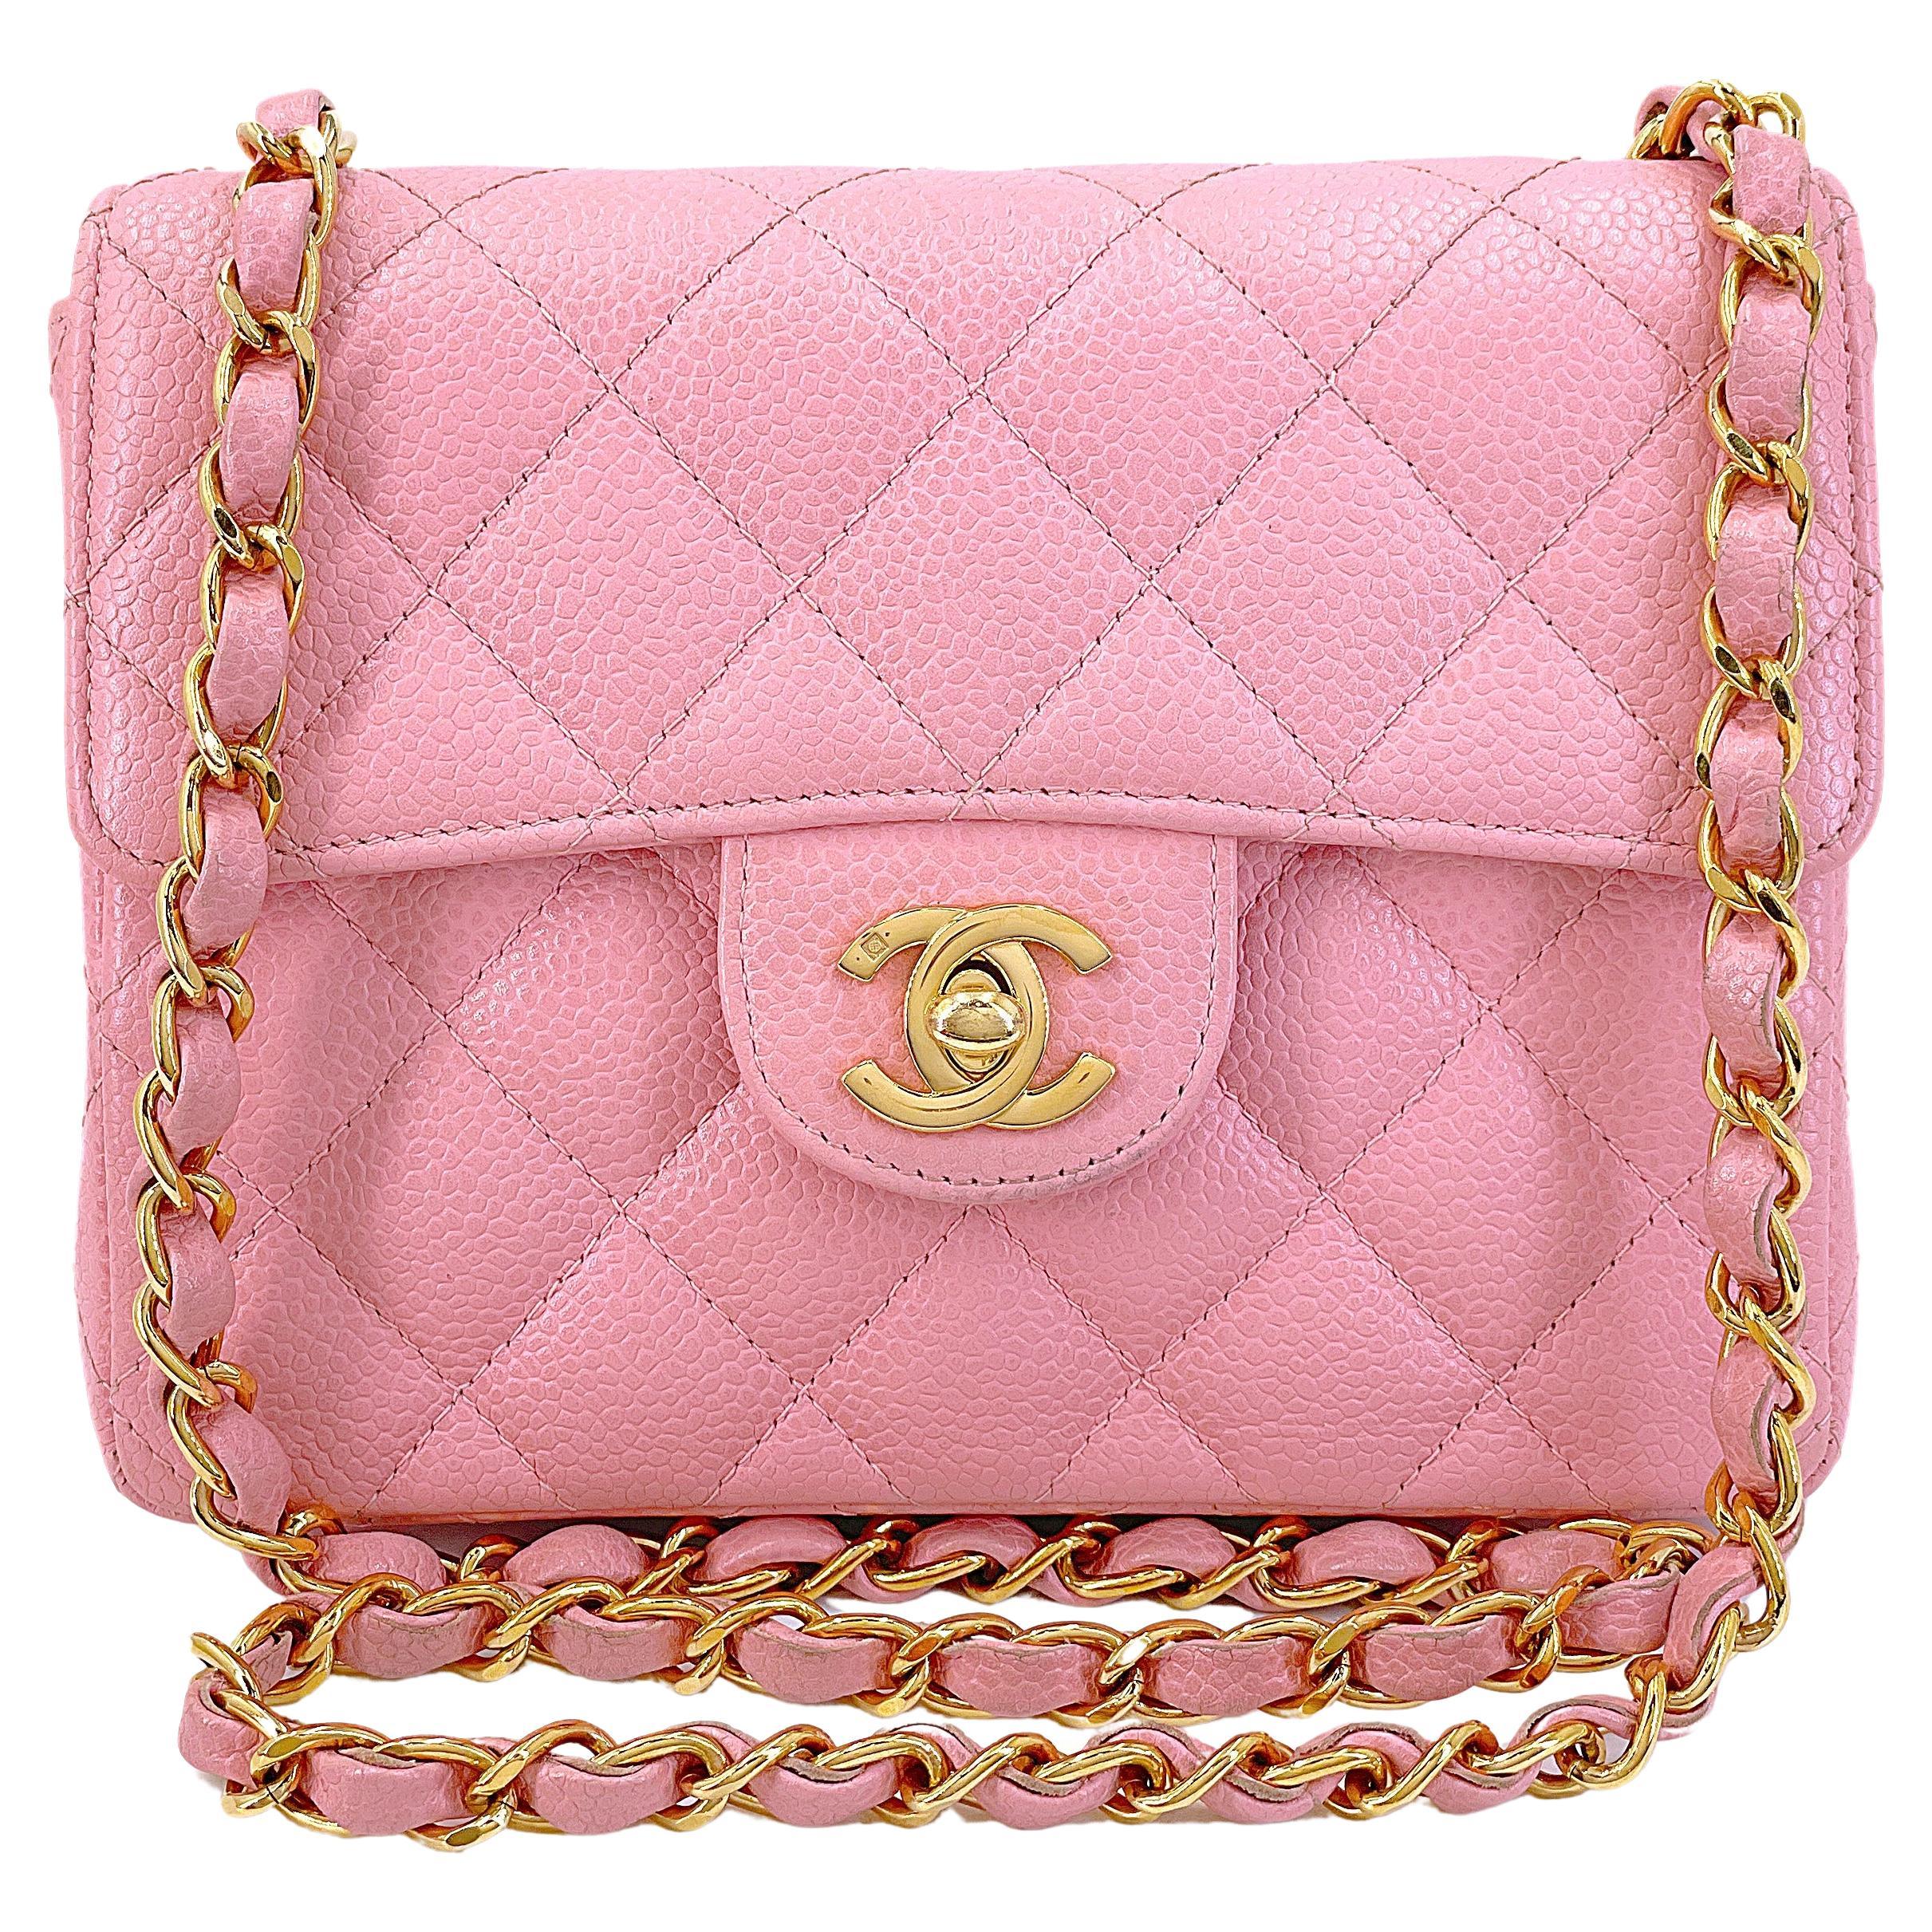 Chanel 2004 Vintage Sakura Pink Square Mini Flap Bag 24k GHW 67727 For Sale